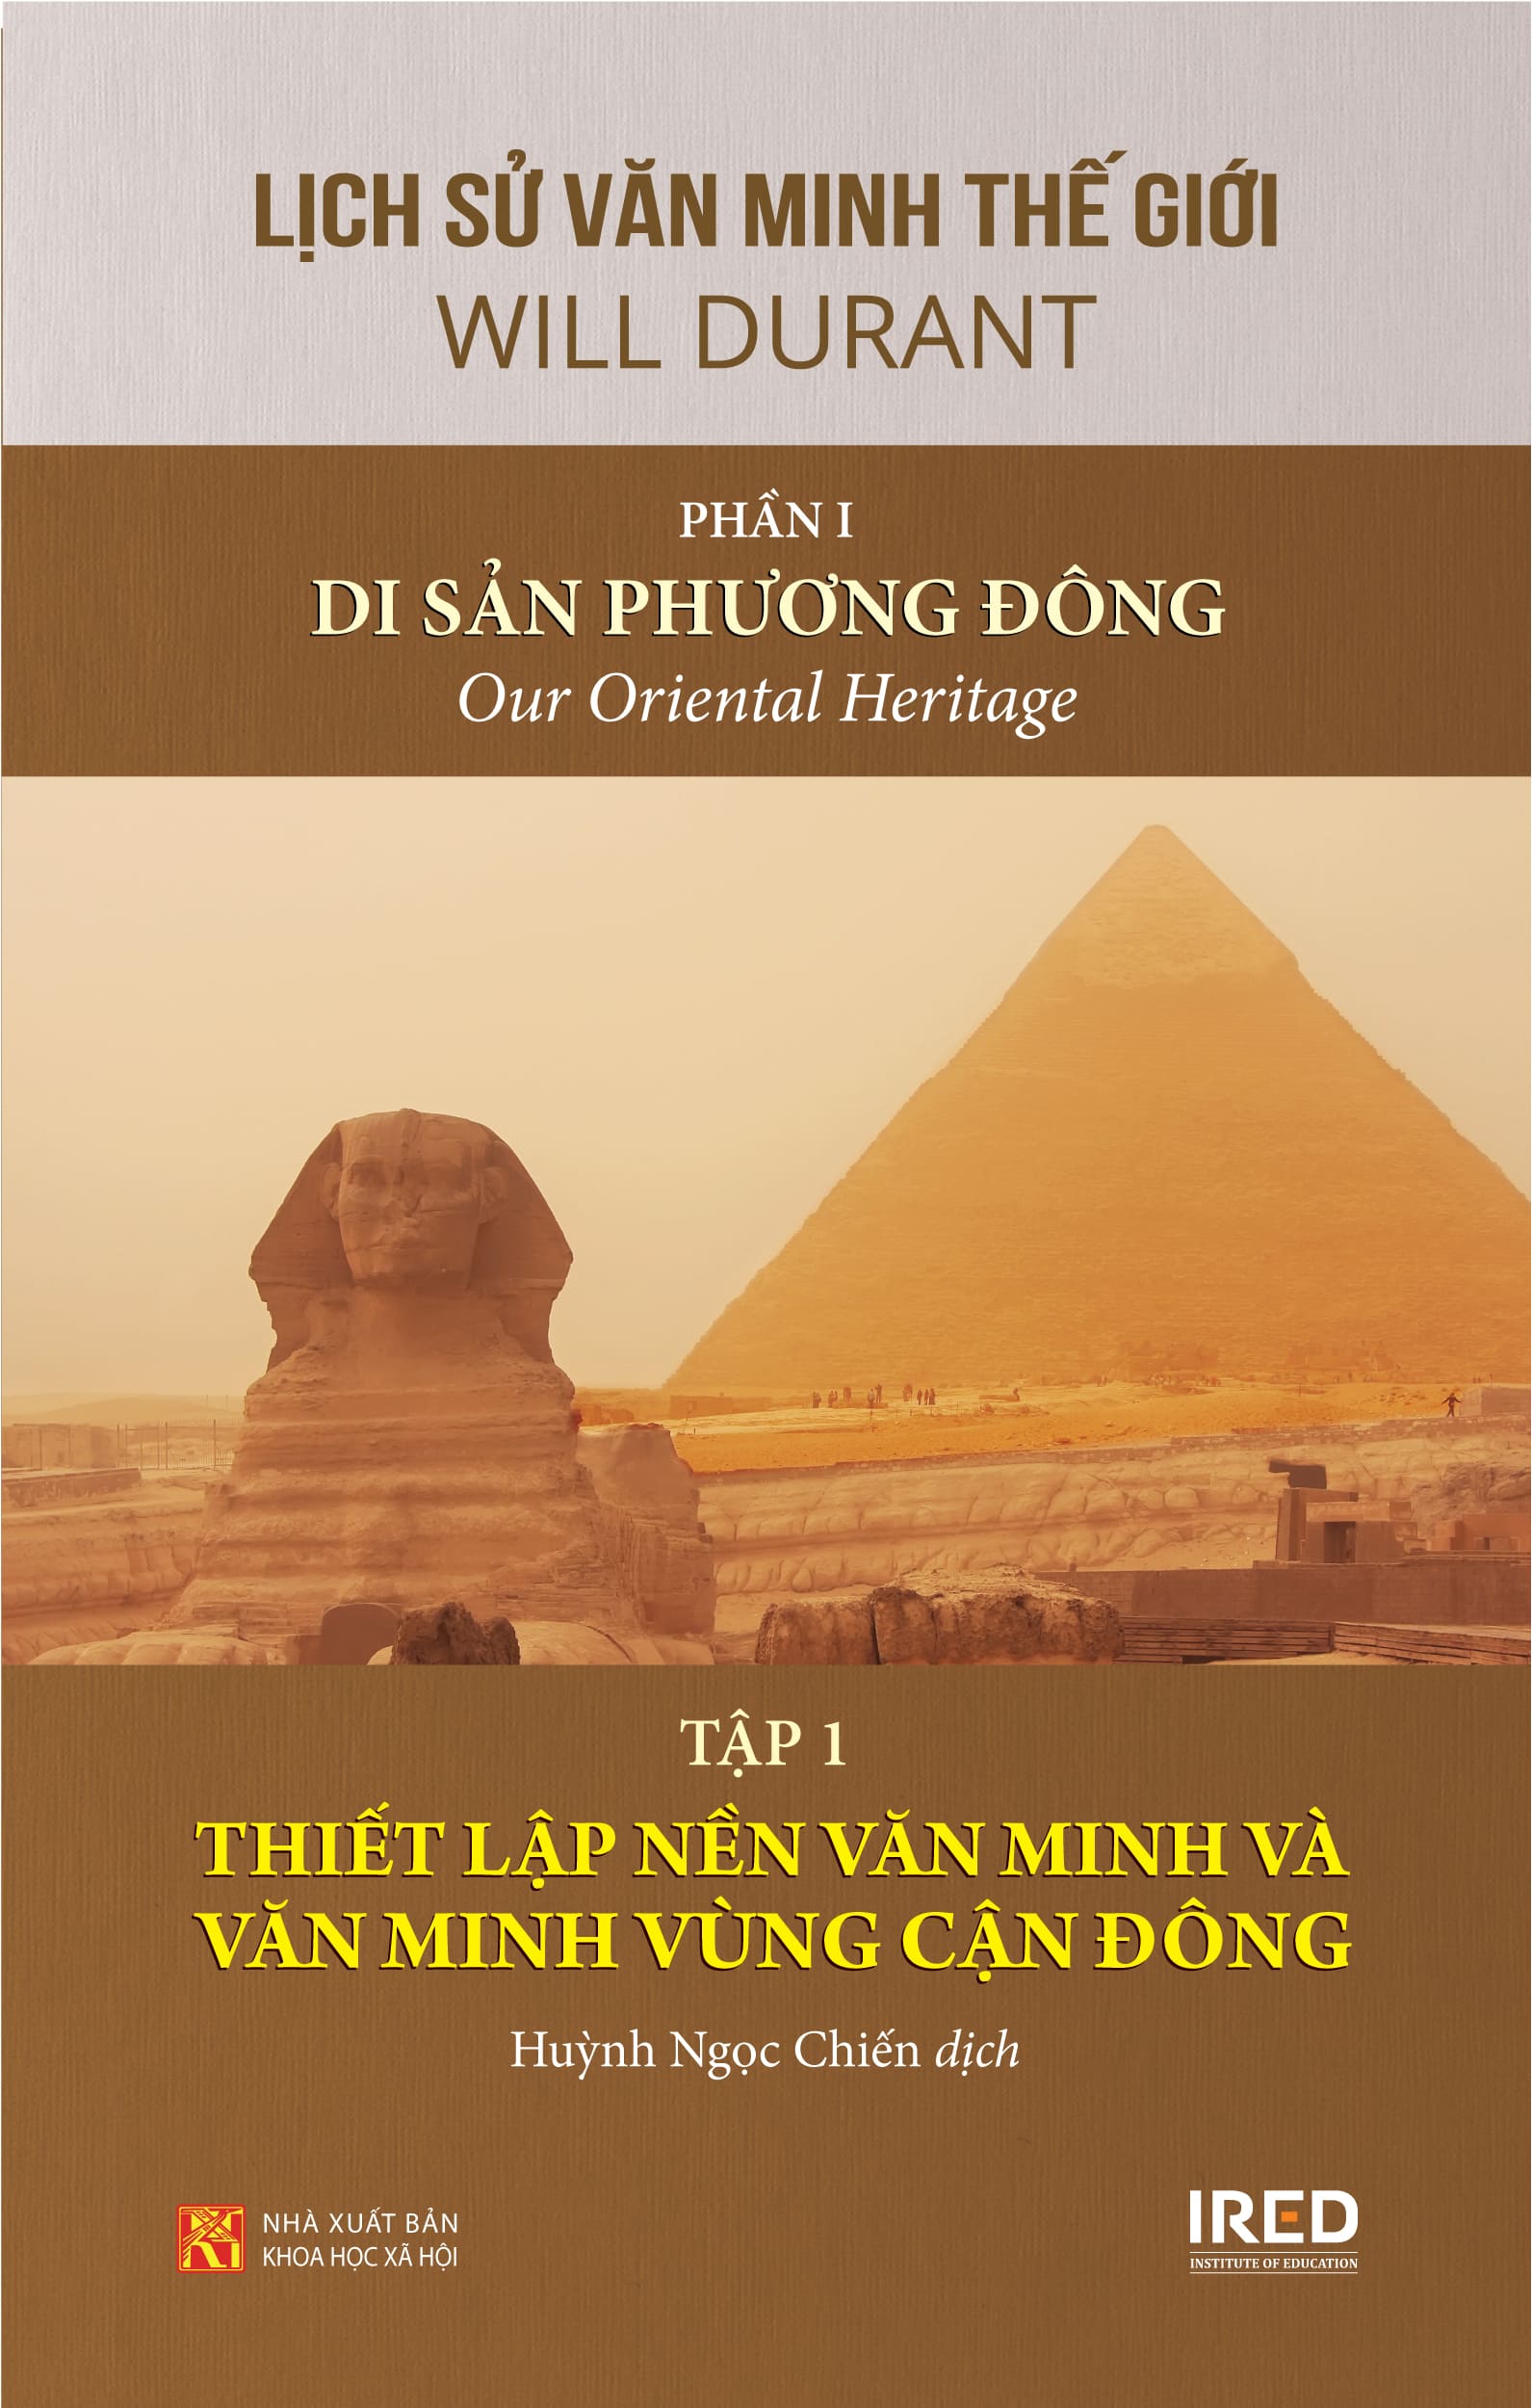 Sách IRED Books - Lịch sử văn minh thế giới phần 1 : Di sản phương Đông - Will Durant